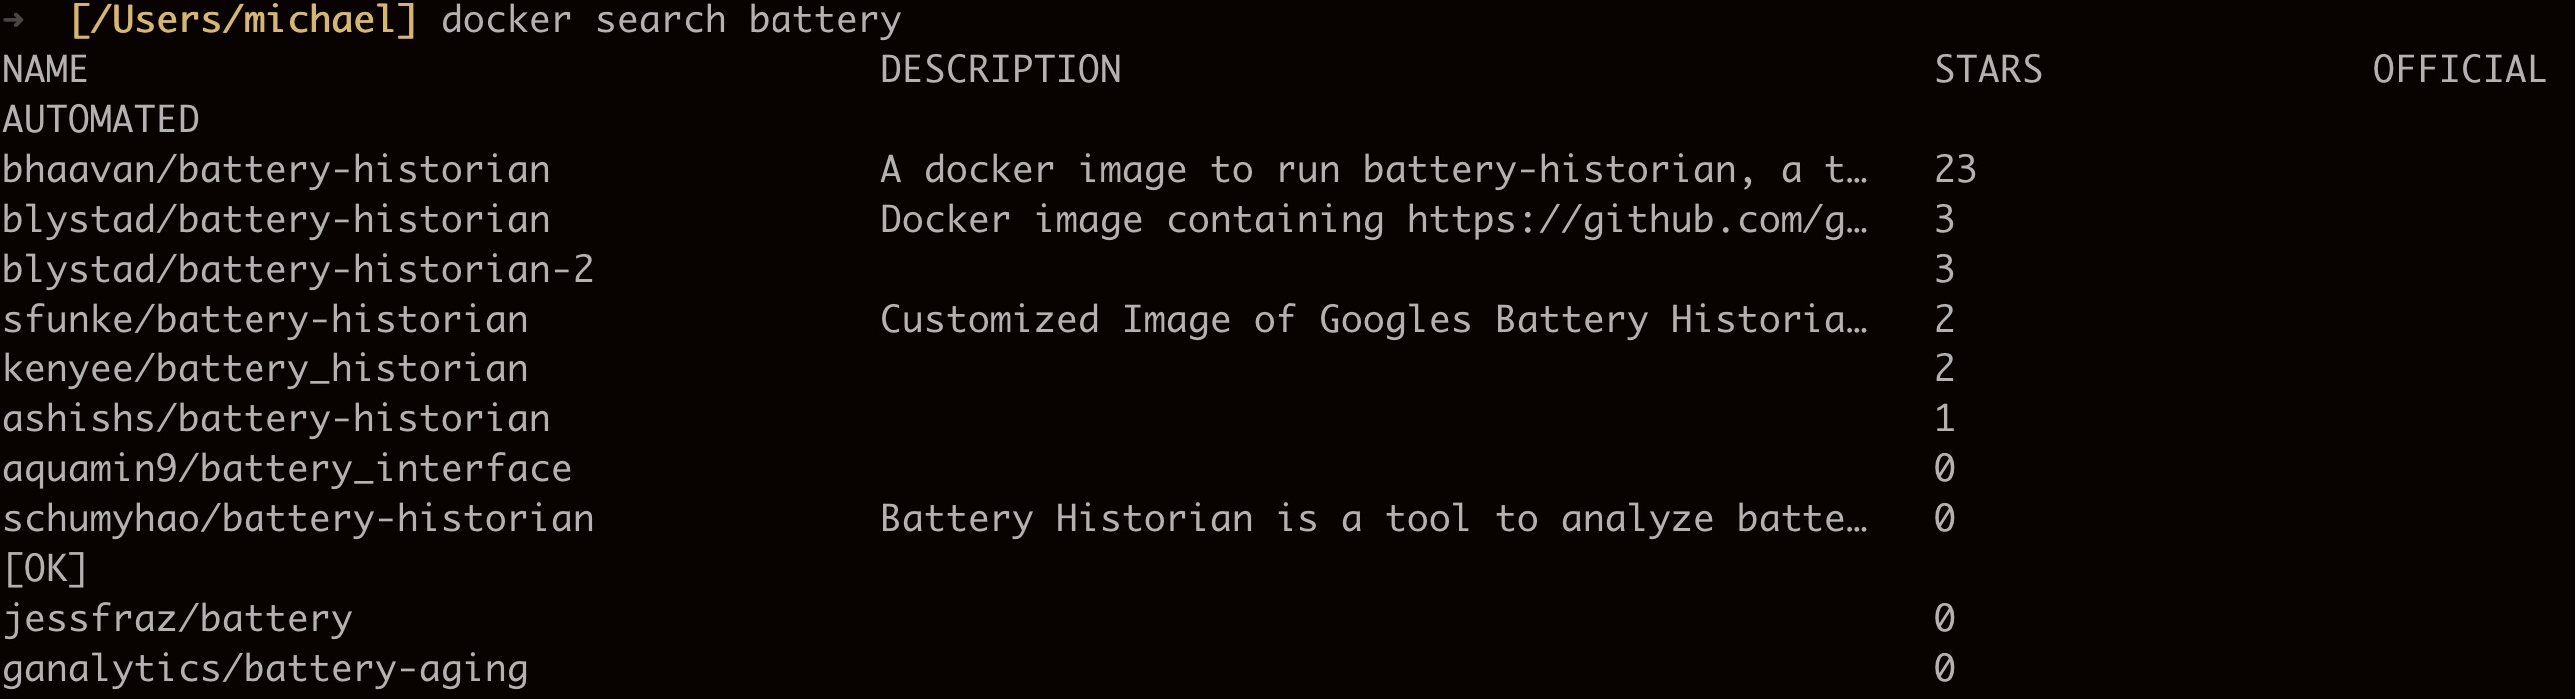 docker search battery